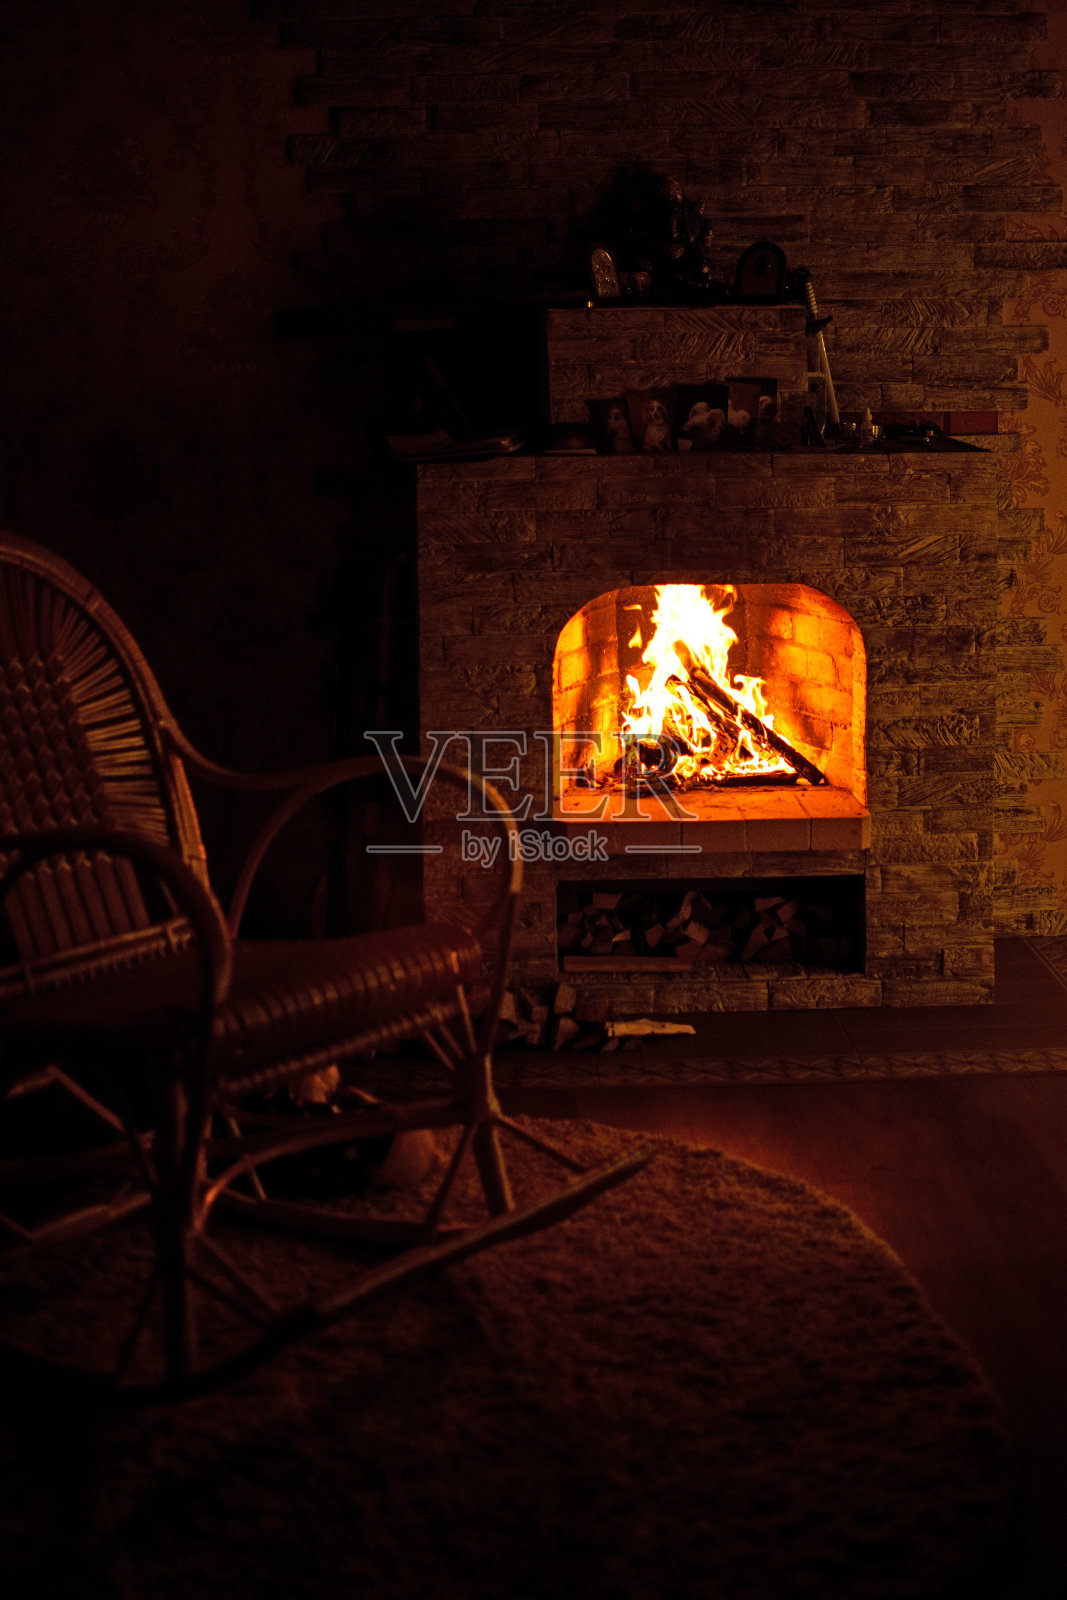 乡村小屋壁炉旁的摇椅。壁炉里的火很暖和。照片摄影图片